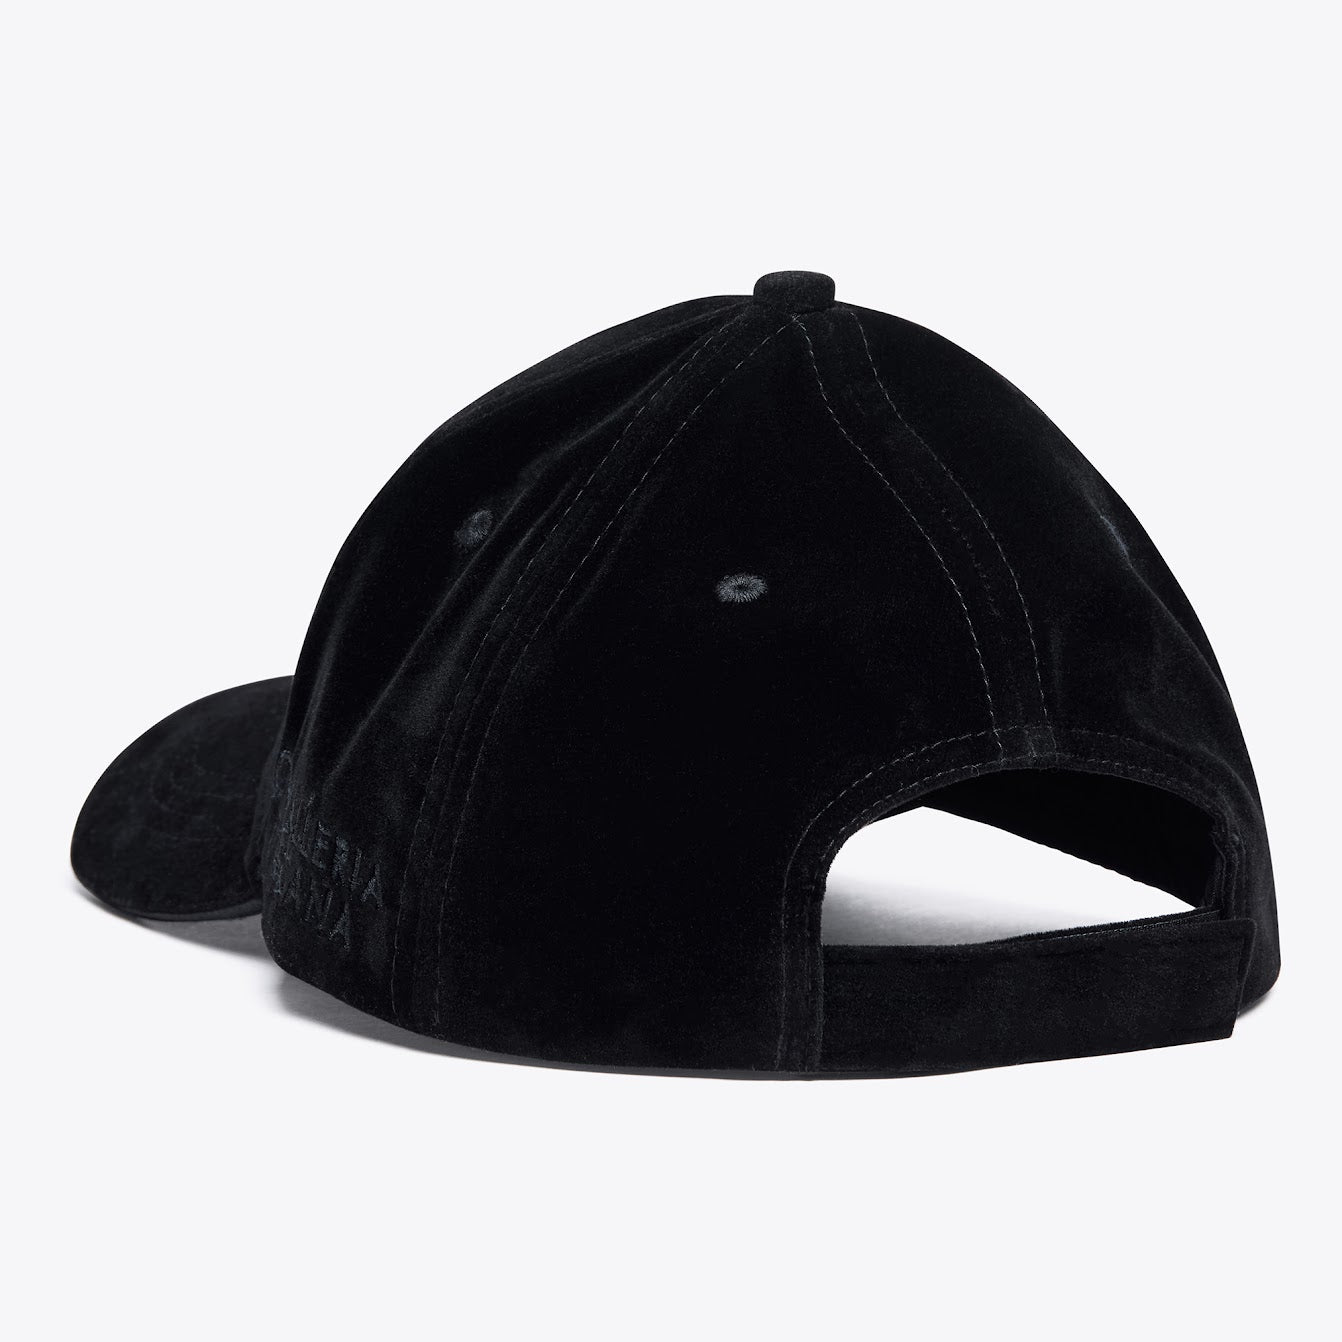 Cavalleria Toscana Black Velvet Cap